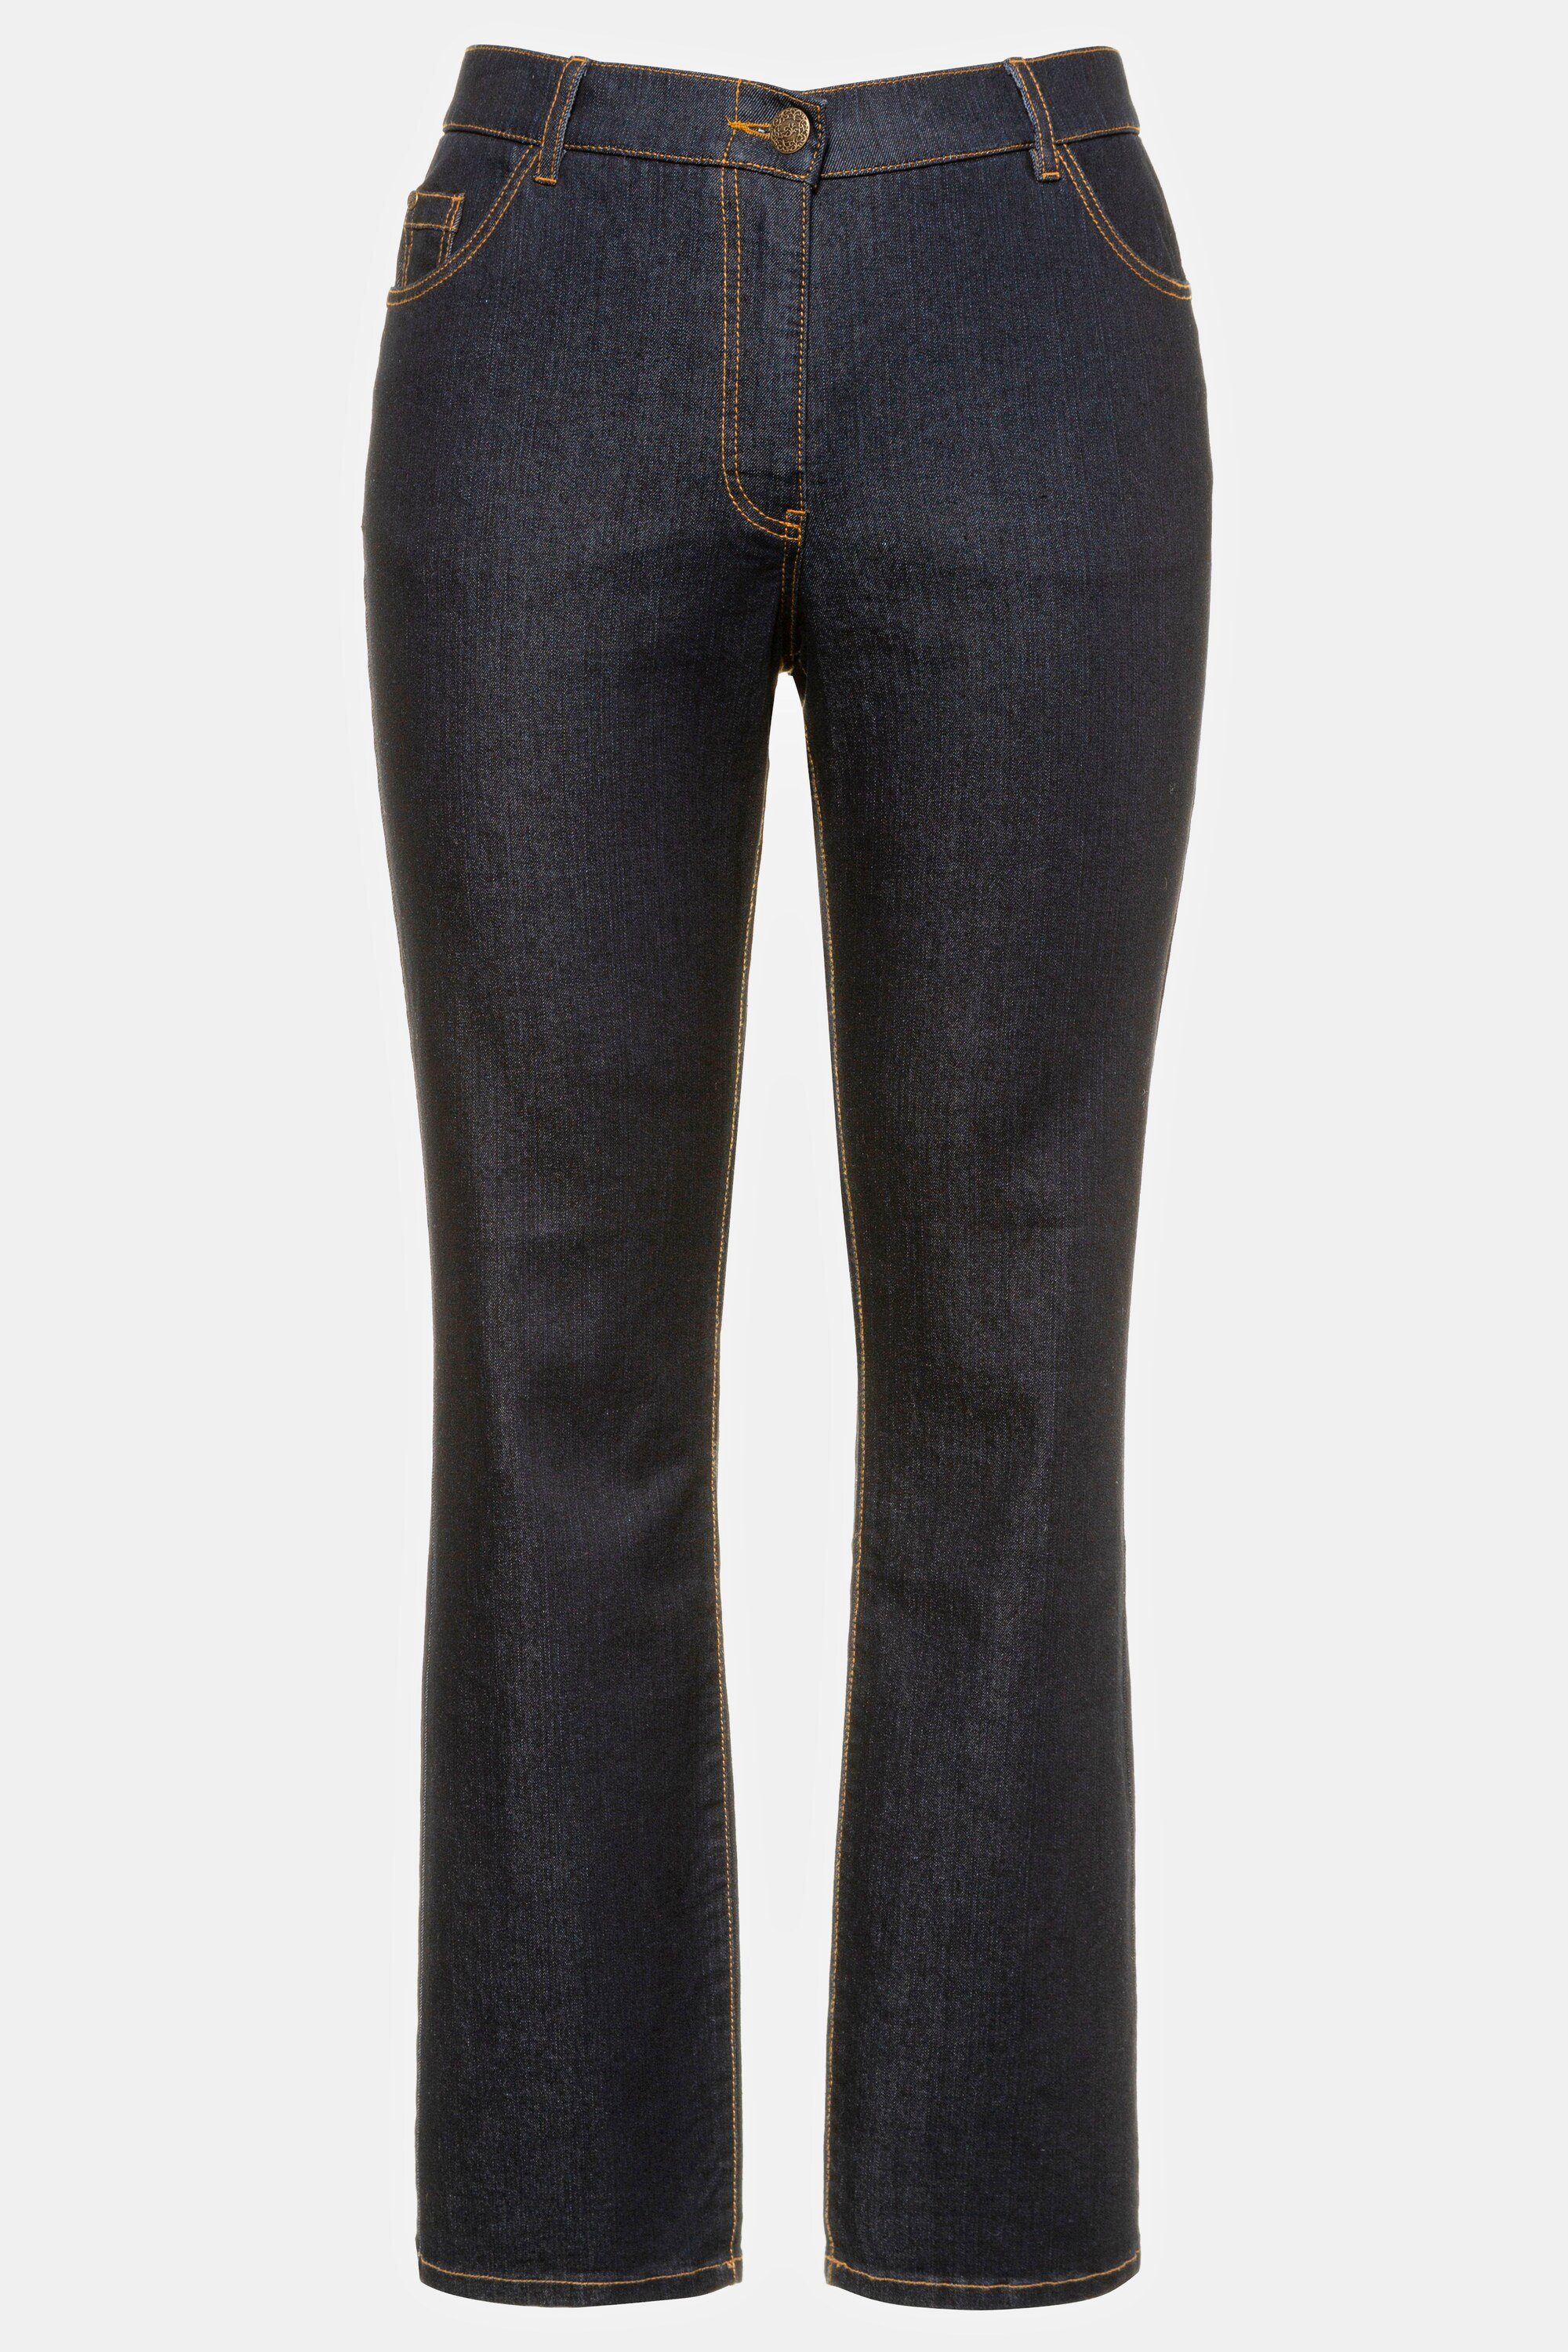 Ulla Popken Mandy 5-Pocket-Form dark gerade Funktionshose Komfortbund denim Jeans blue